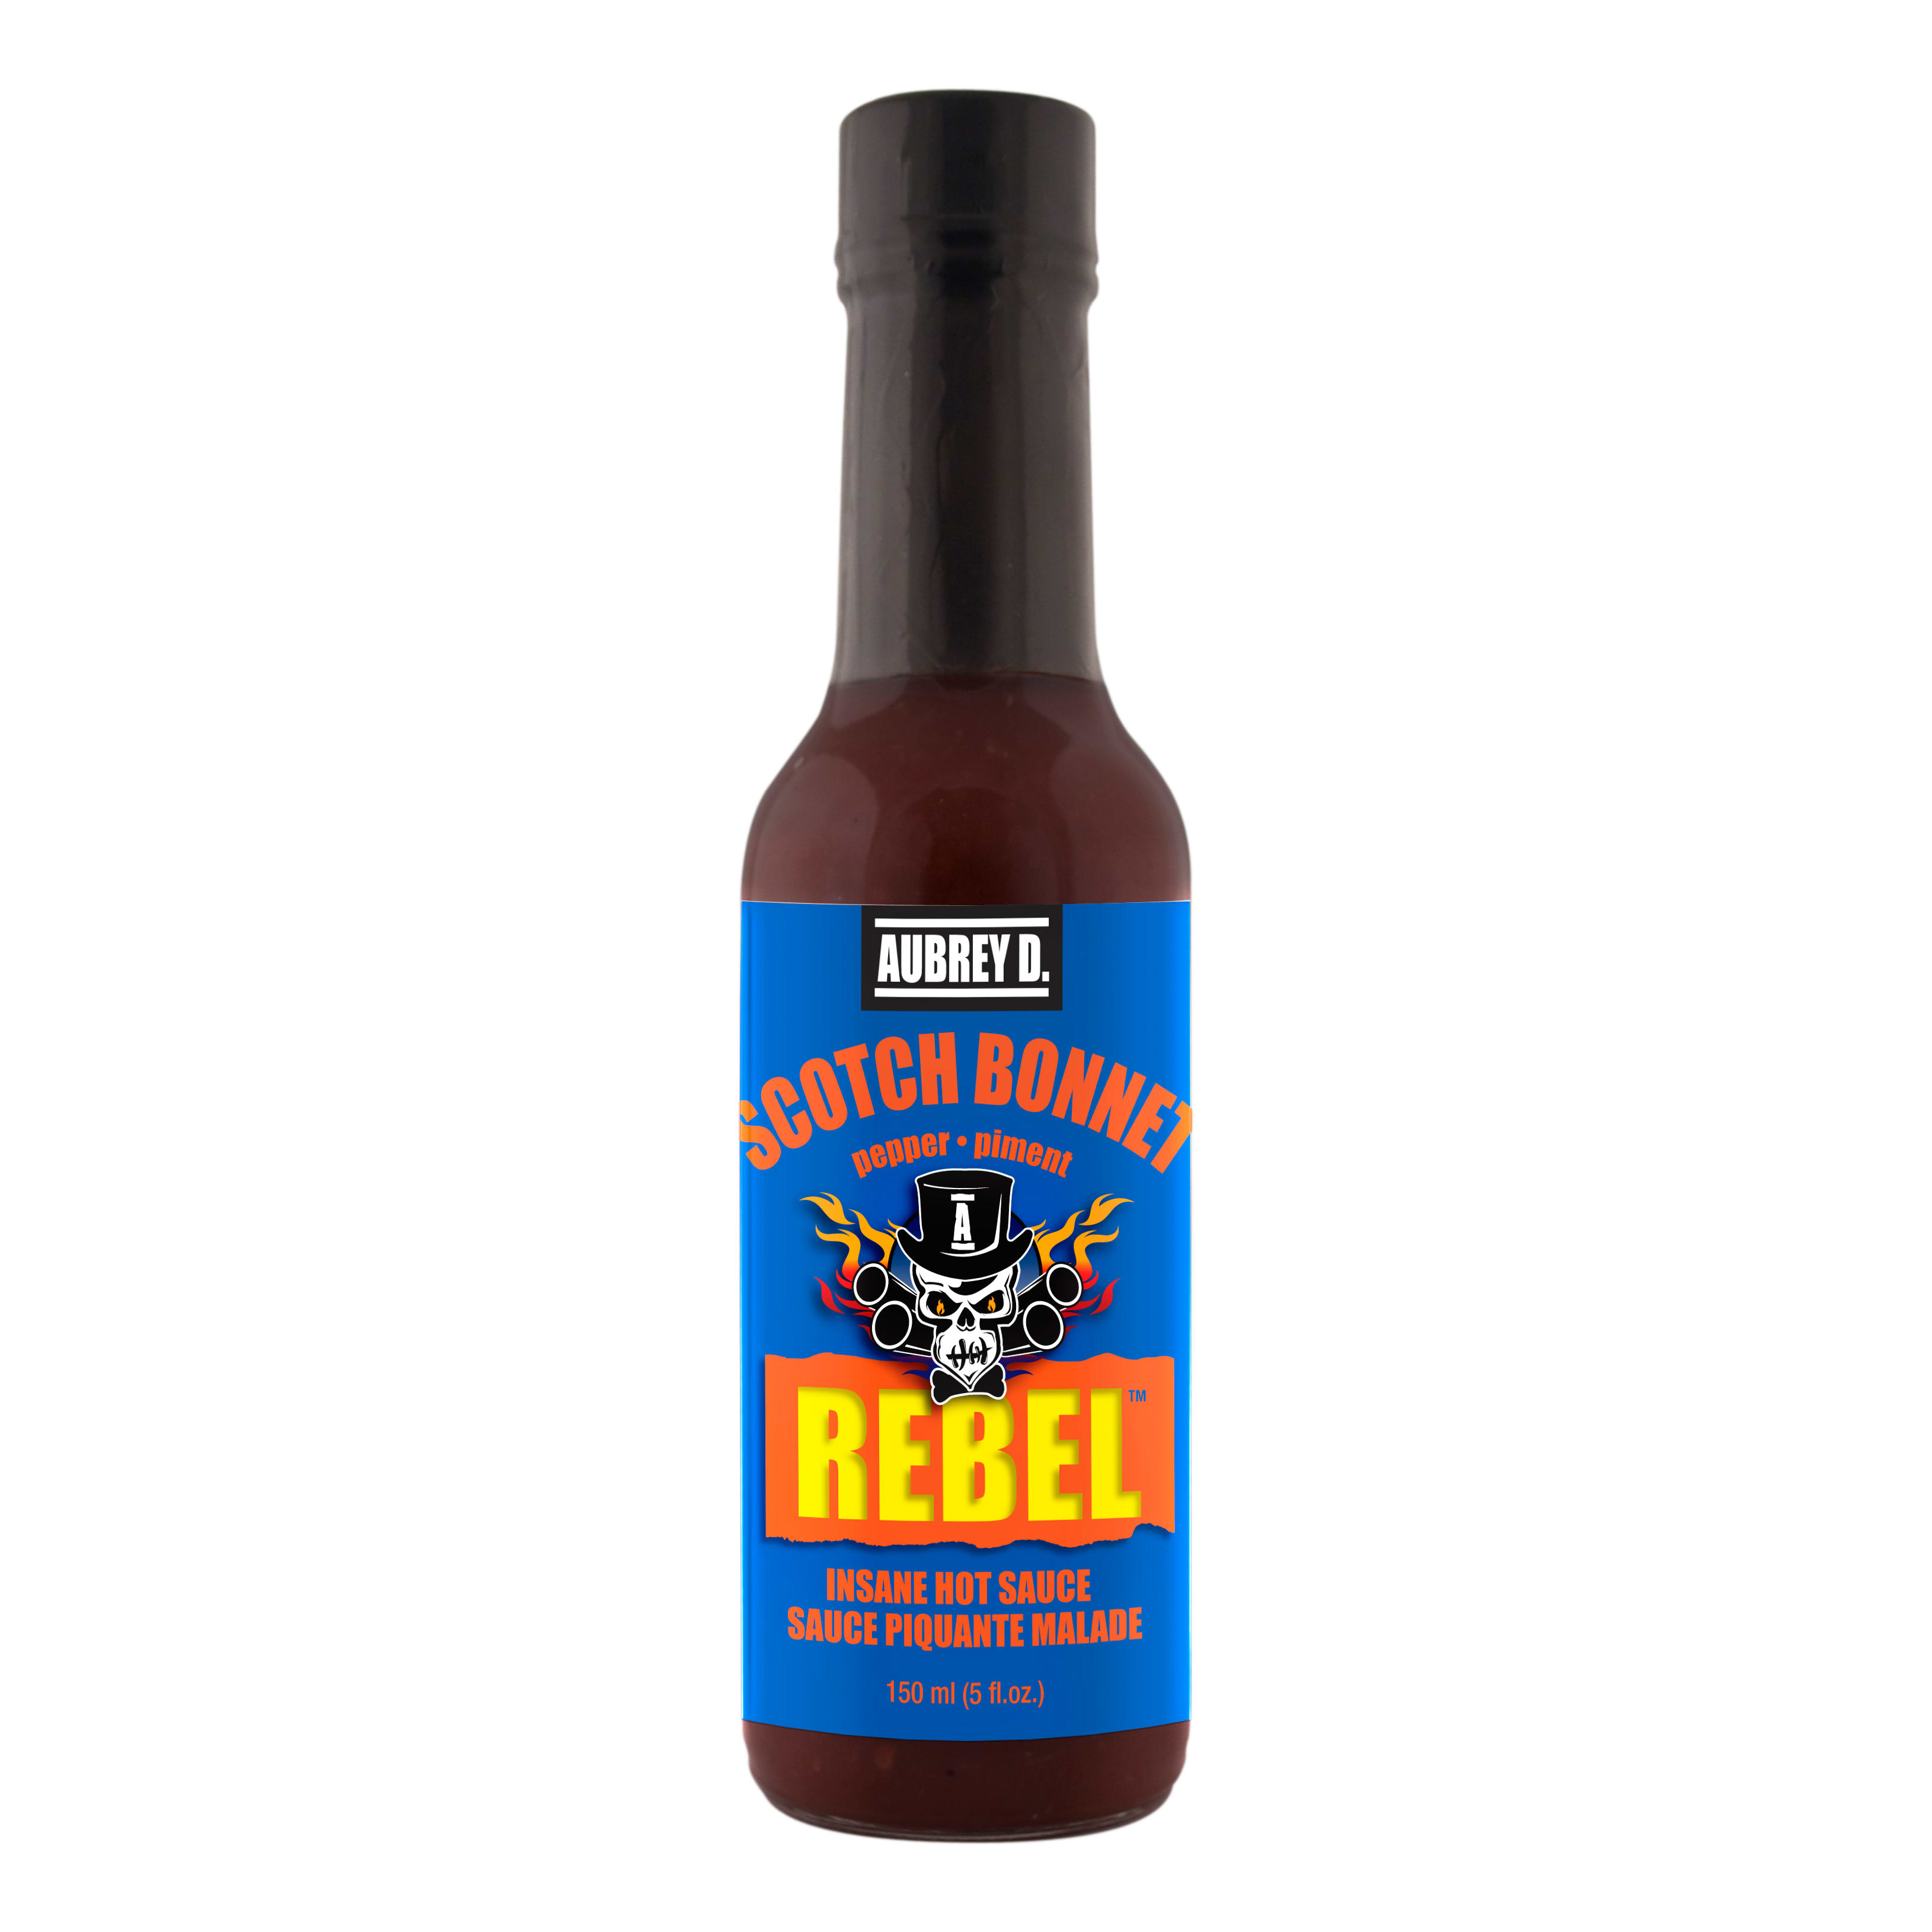 Aubrey D. Rebel Scotch Bonnet Pepper Hot Sauce